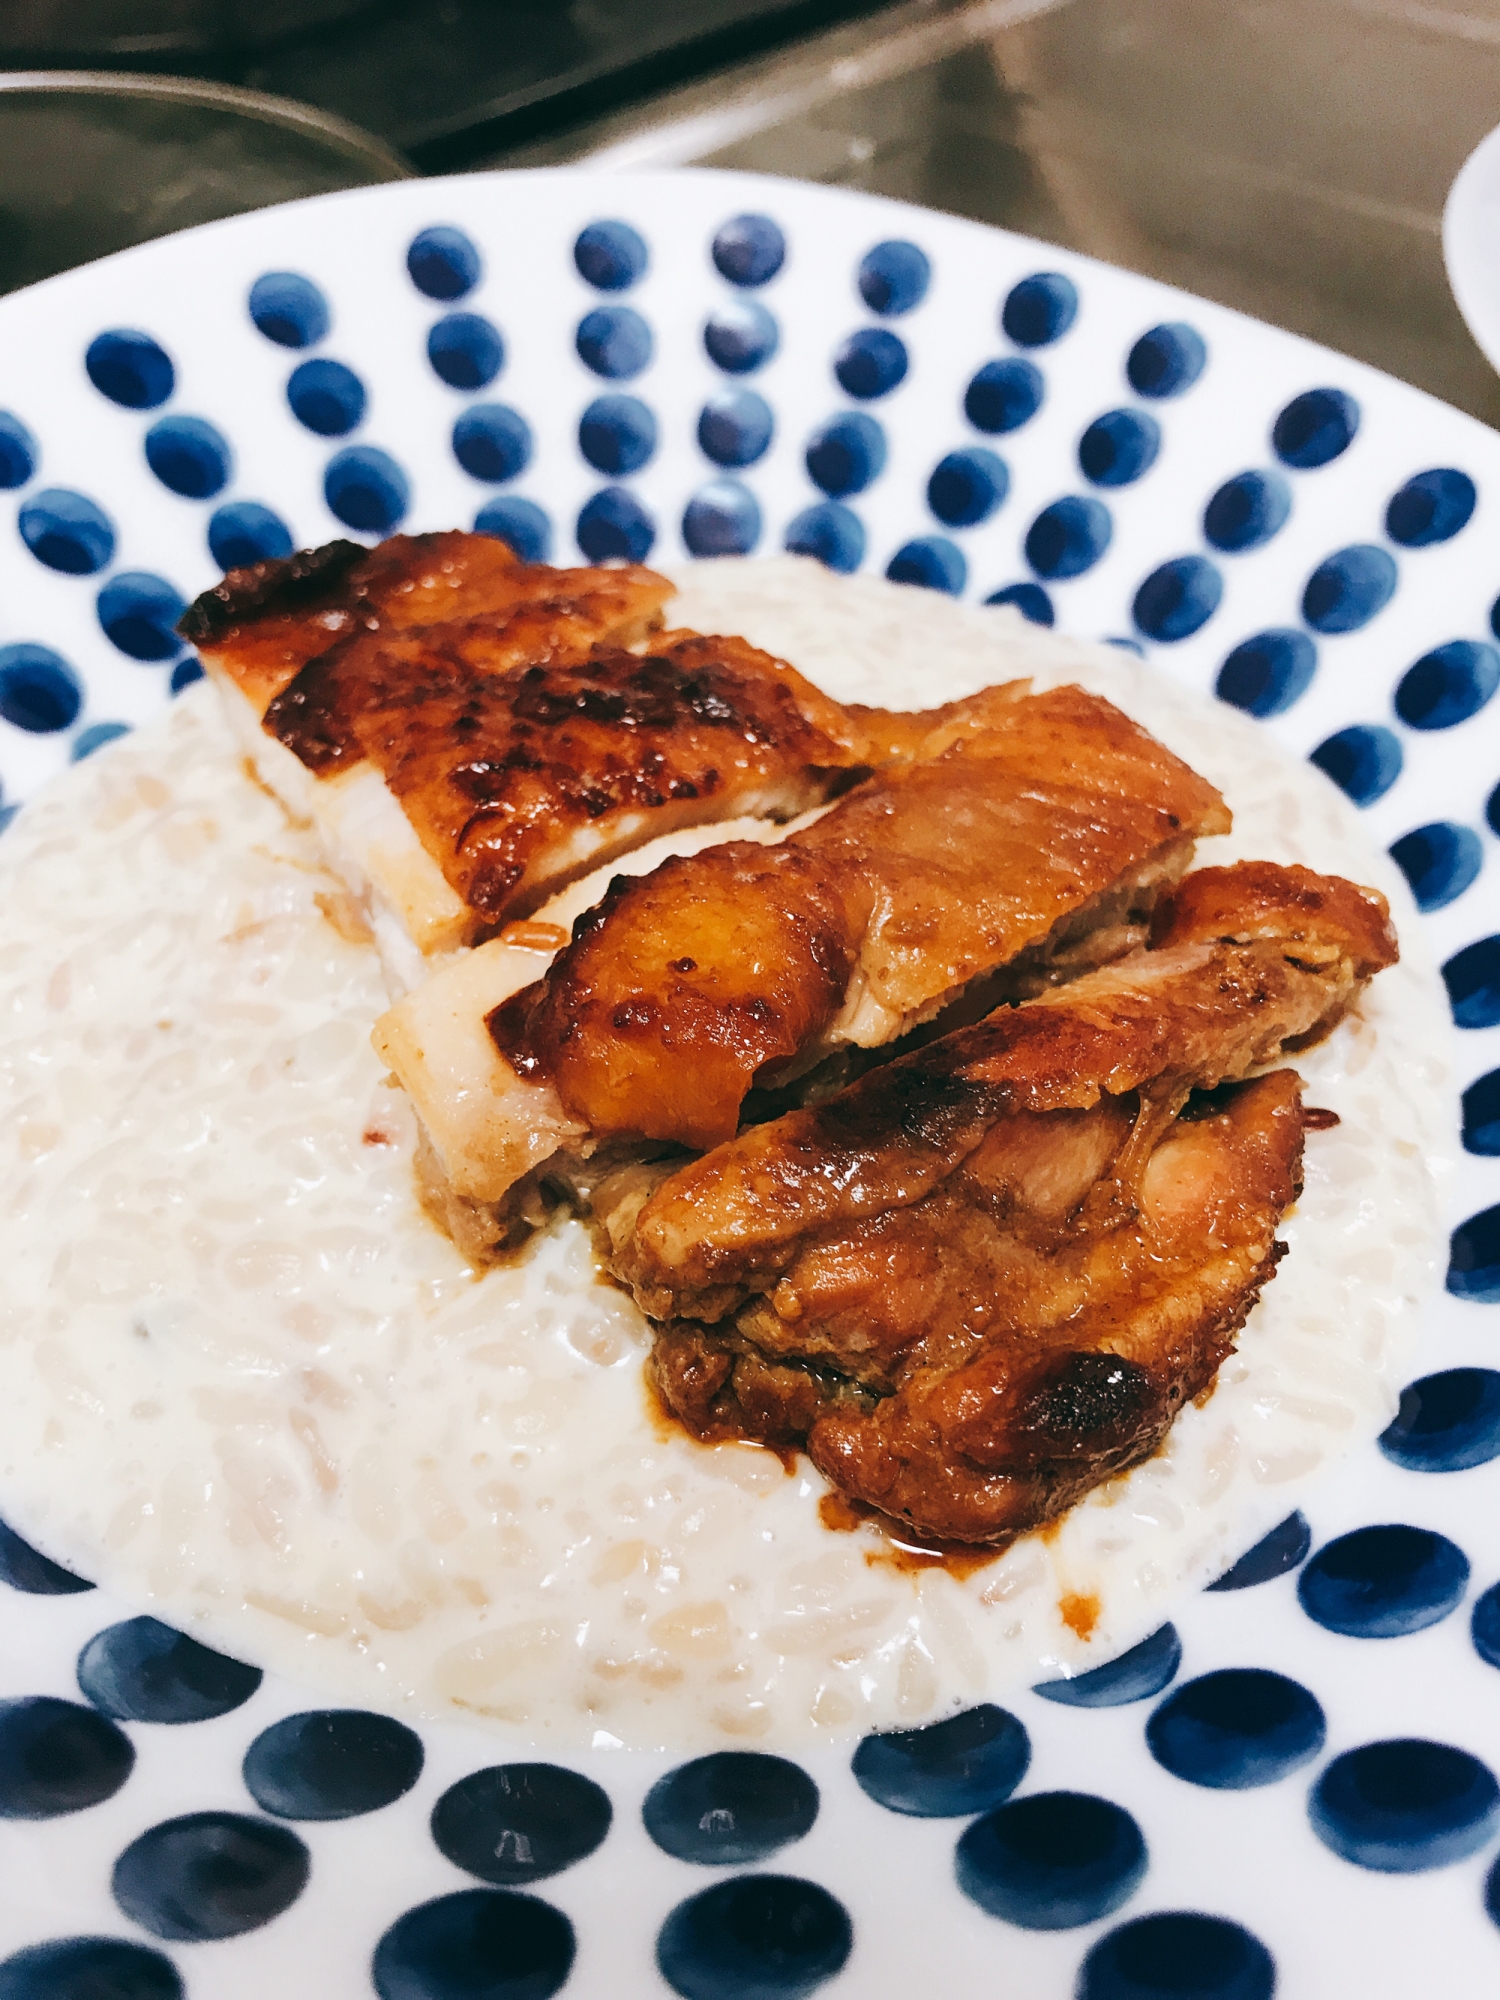 鶏モモ肉のピリ辛味噌焼き  クリームリゾット